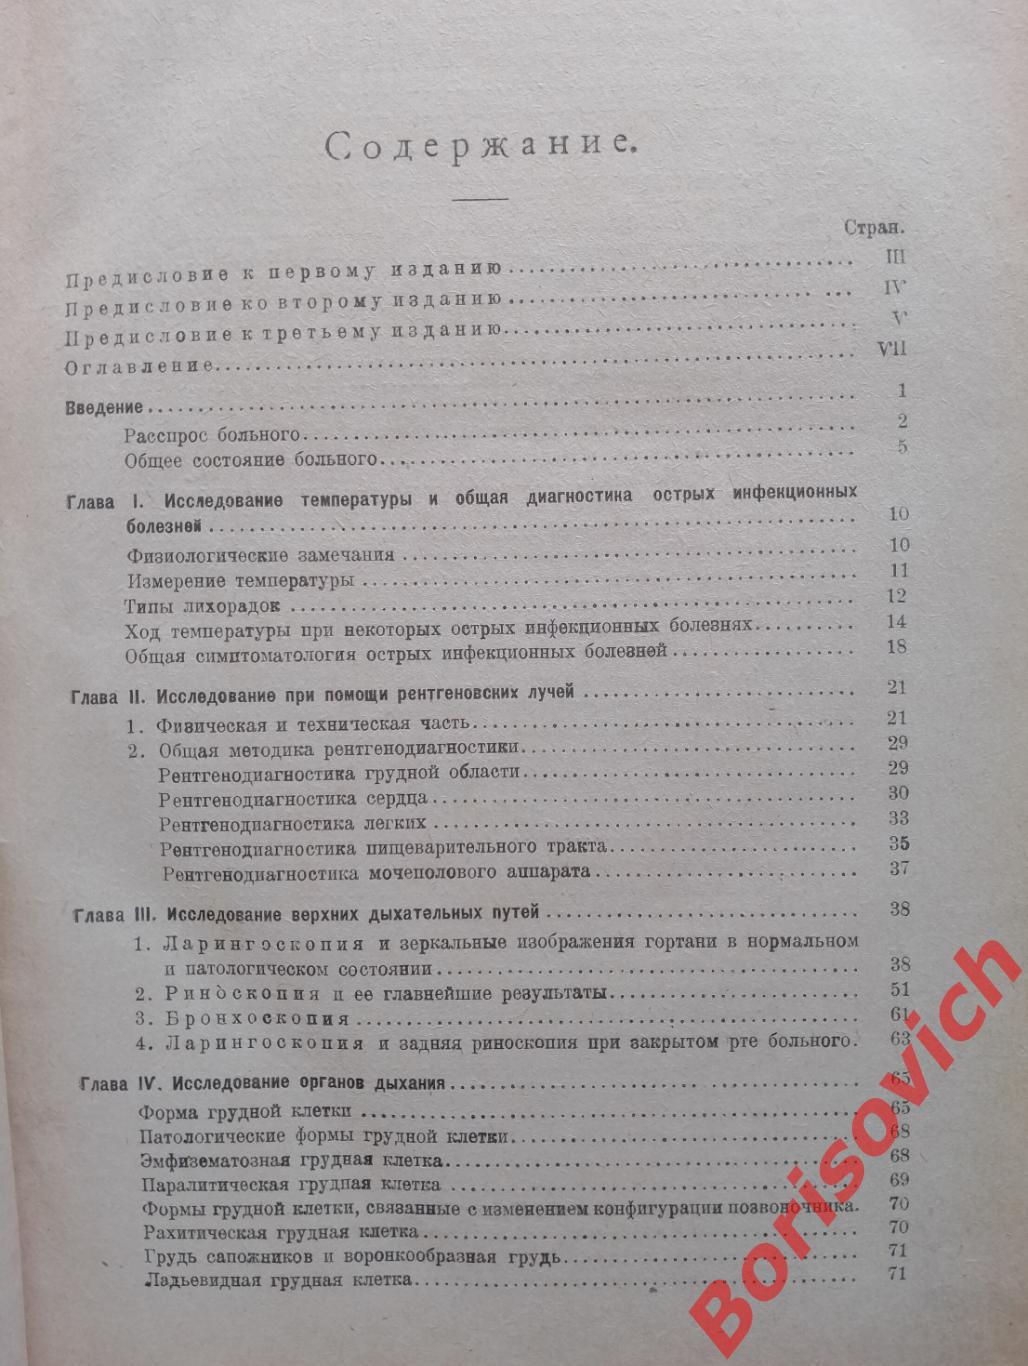 Левин Плетнёв ОСНОВЫ КЛИНИЧЕСКОЙ ДИАГНОСТИКИ для врачей и студентов 1922 г 3